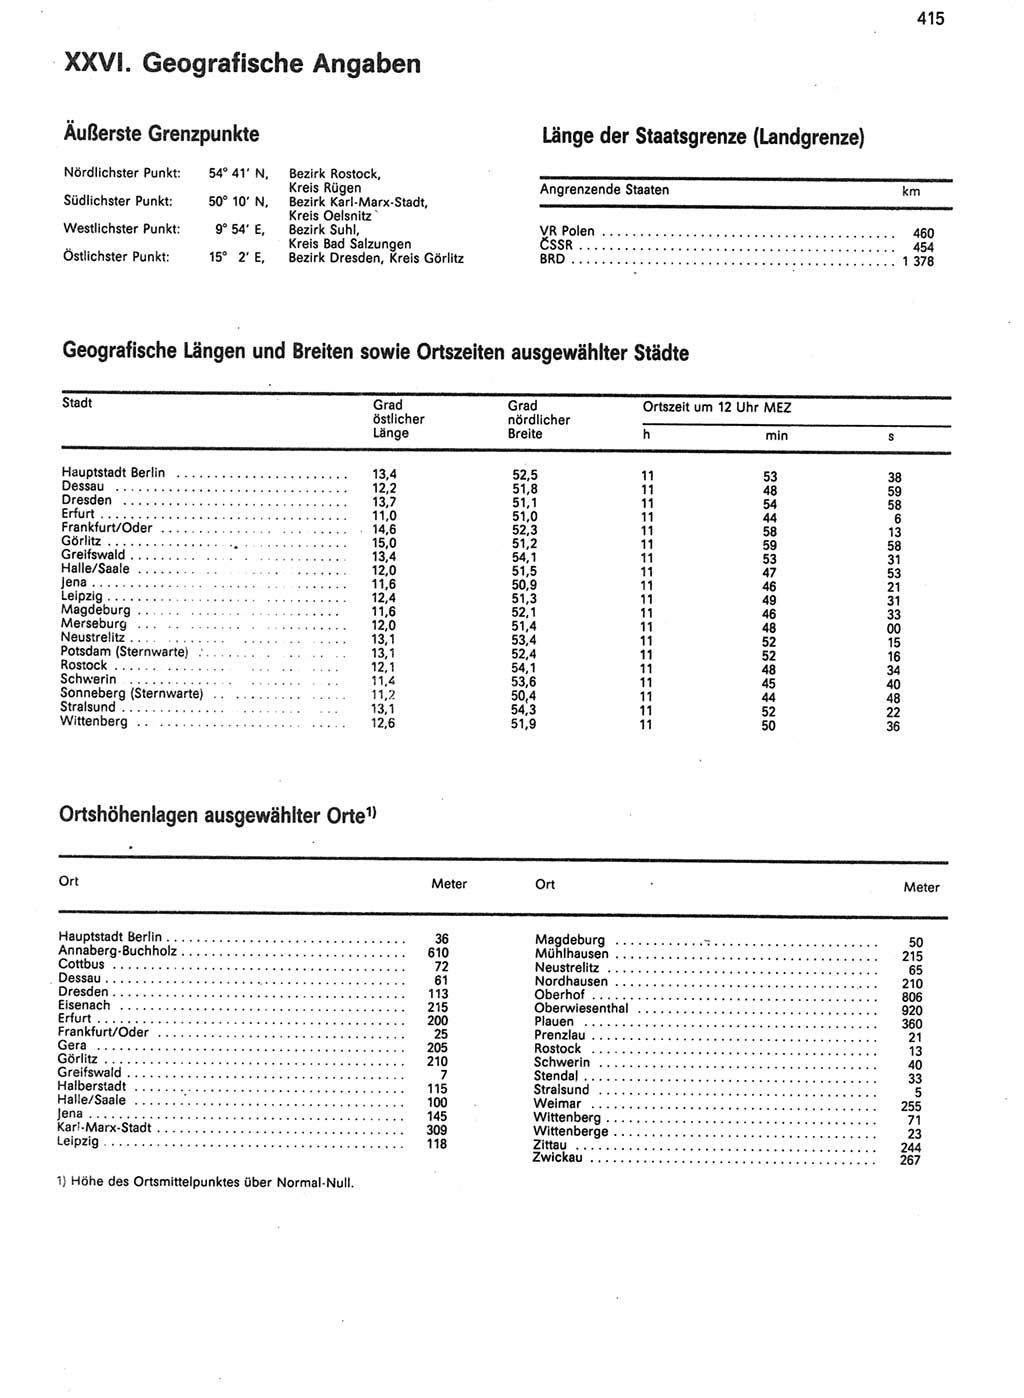 Statistisches Jahrbuch der Deutschen Demokratischen Republik (DDR) 1988, Seite 415 (Stat. Jb. DDR 1988, S. 415)